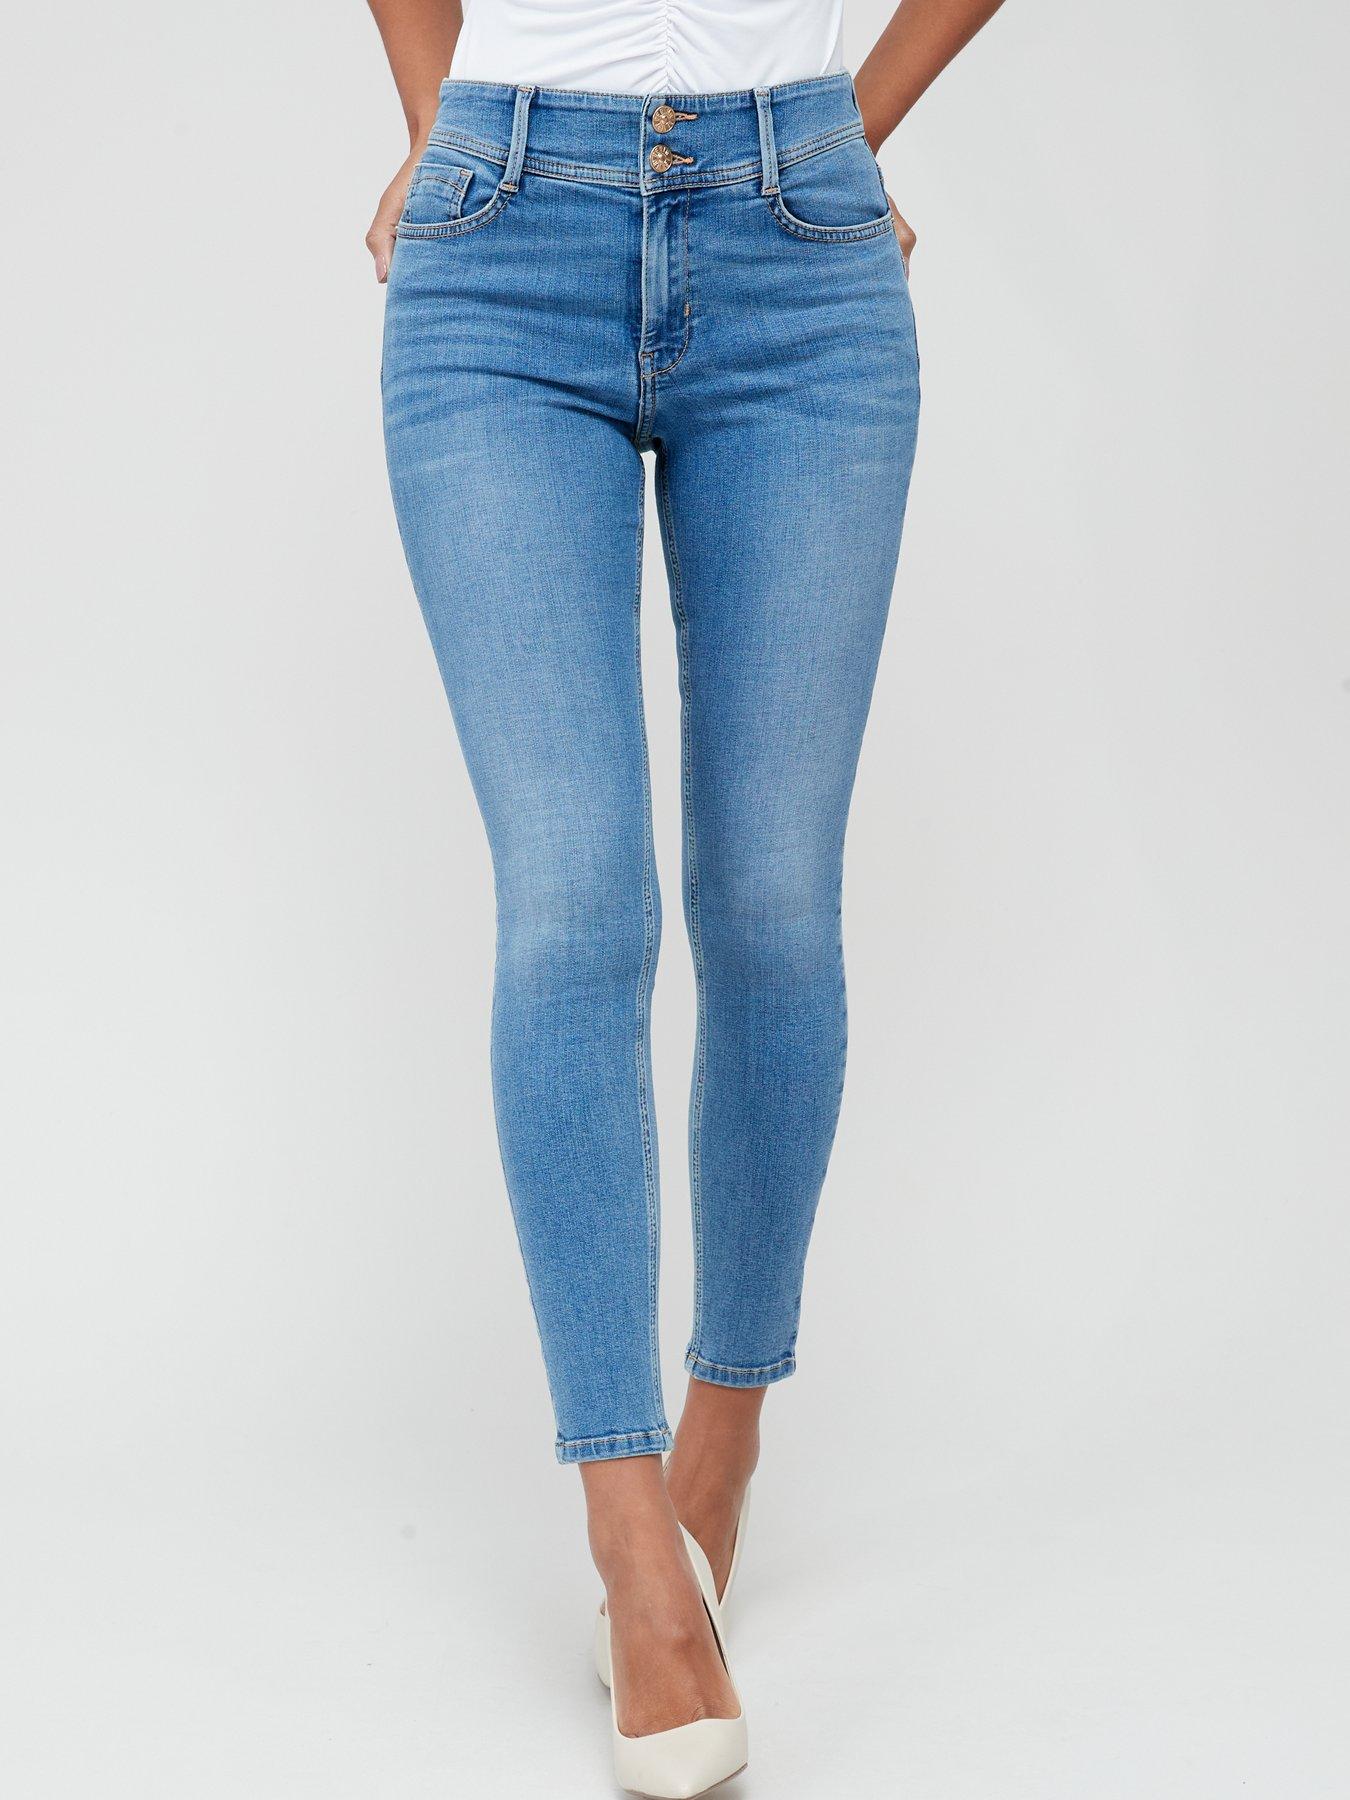 Skinny Jeans, Women